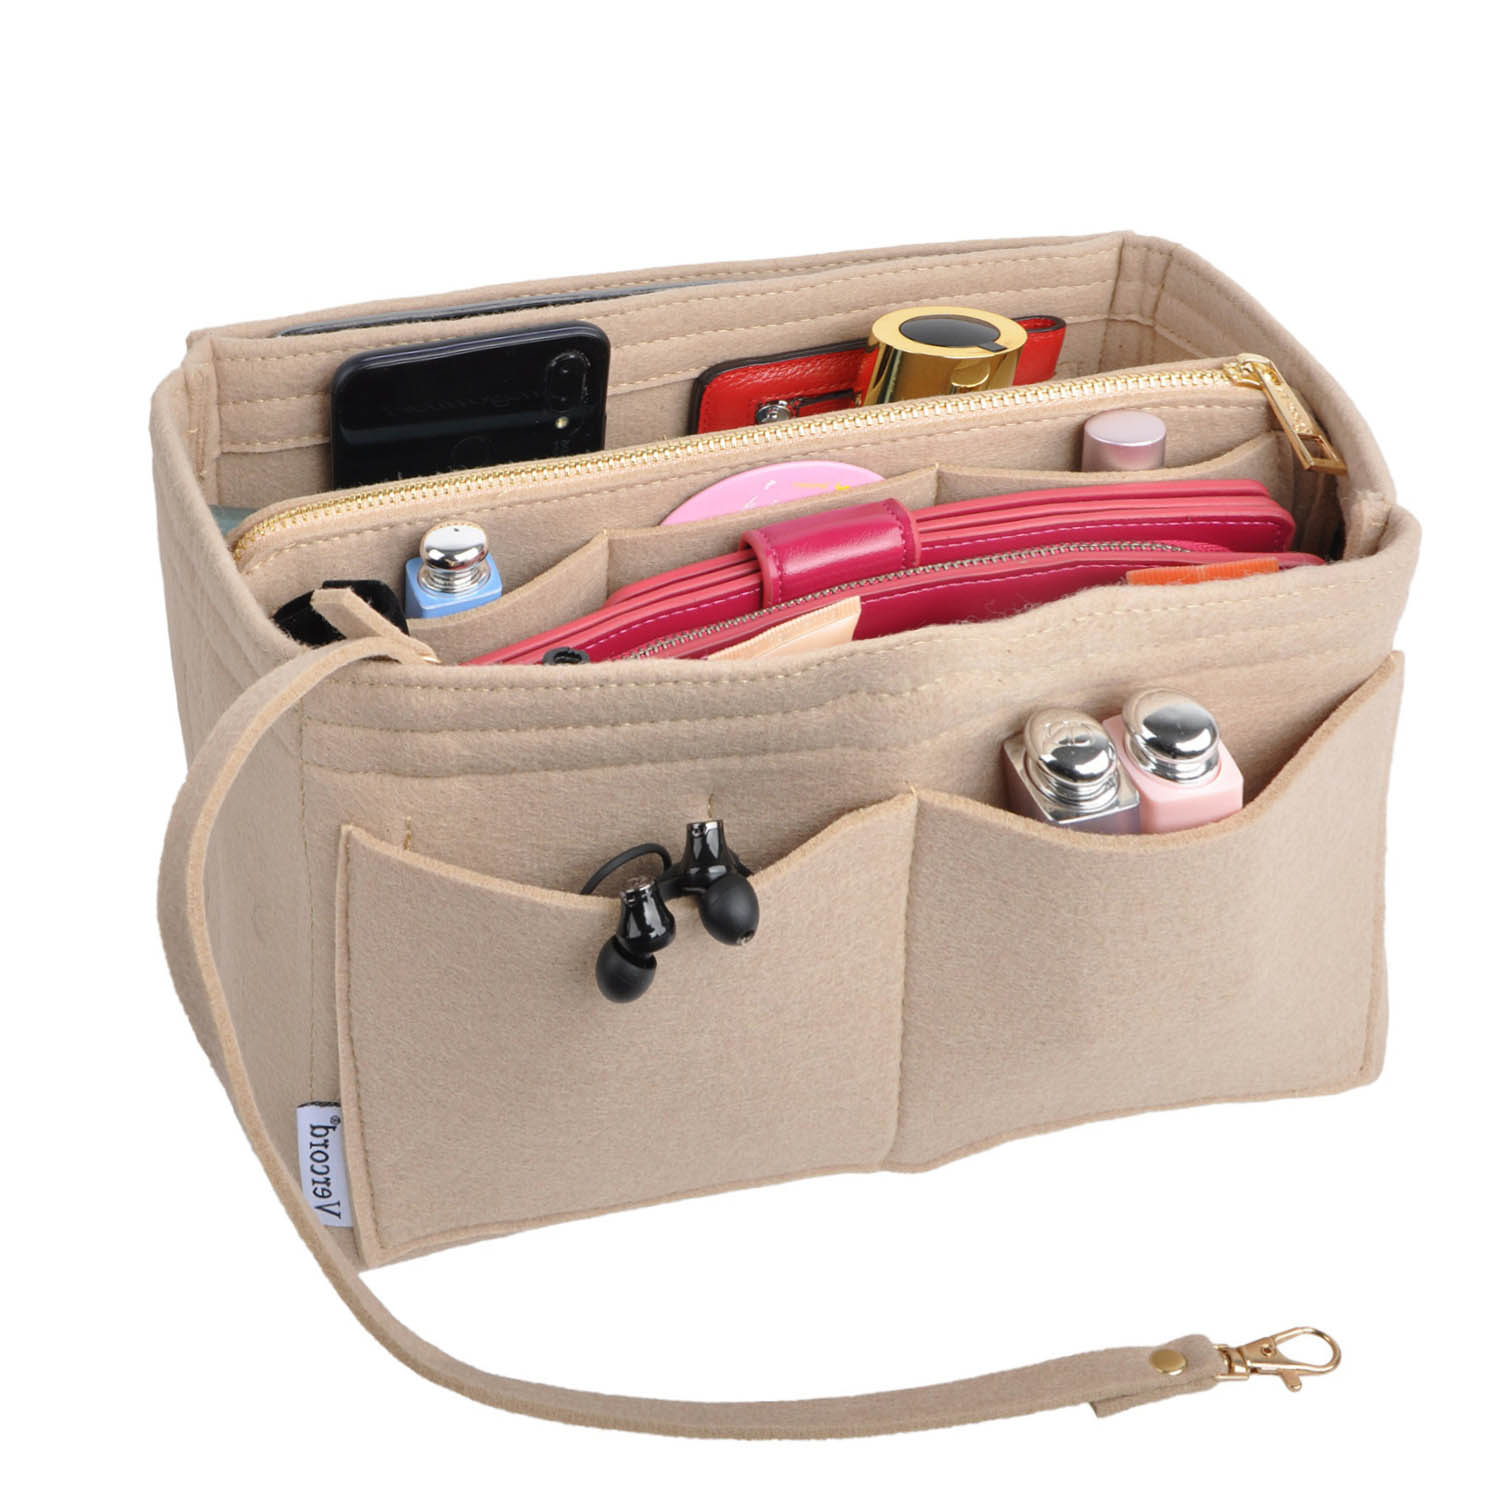 【Only Sale Inner Bag】Bag Organizer Insert For Lv Papillon Trunk Organiser  Divider Shaper Protector Compartment